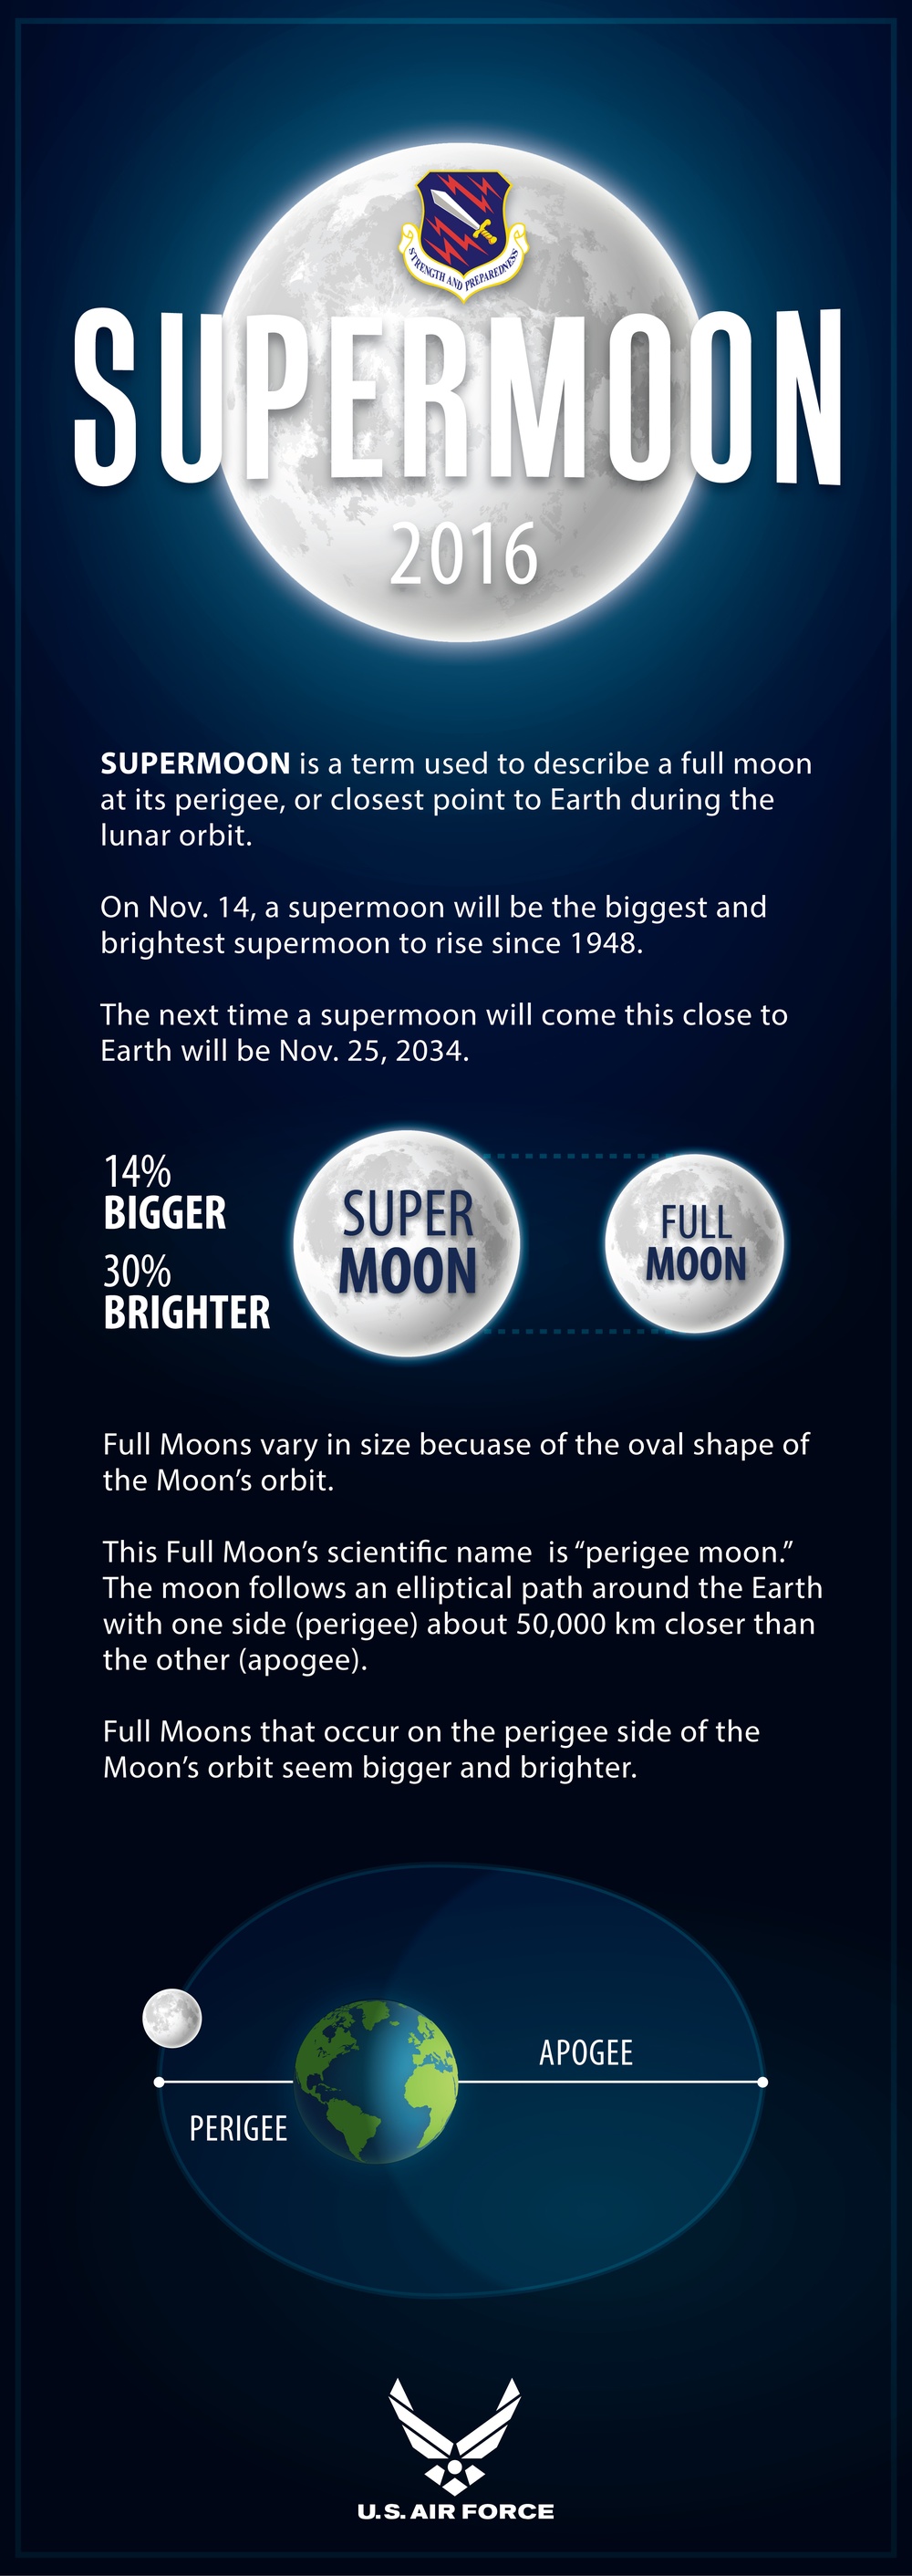 Supermoon infographic